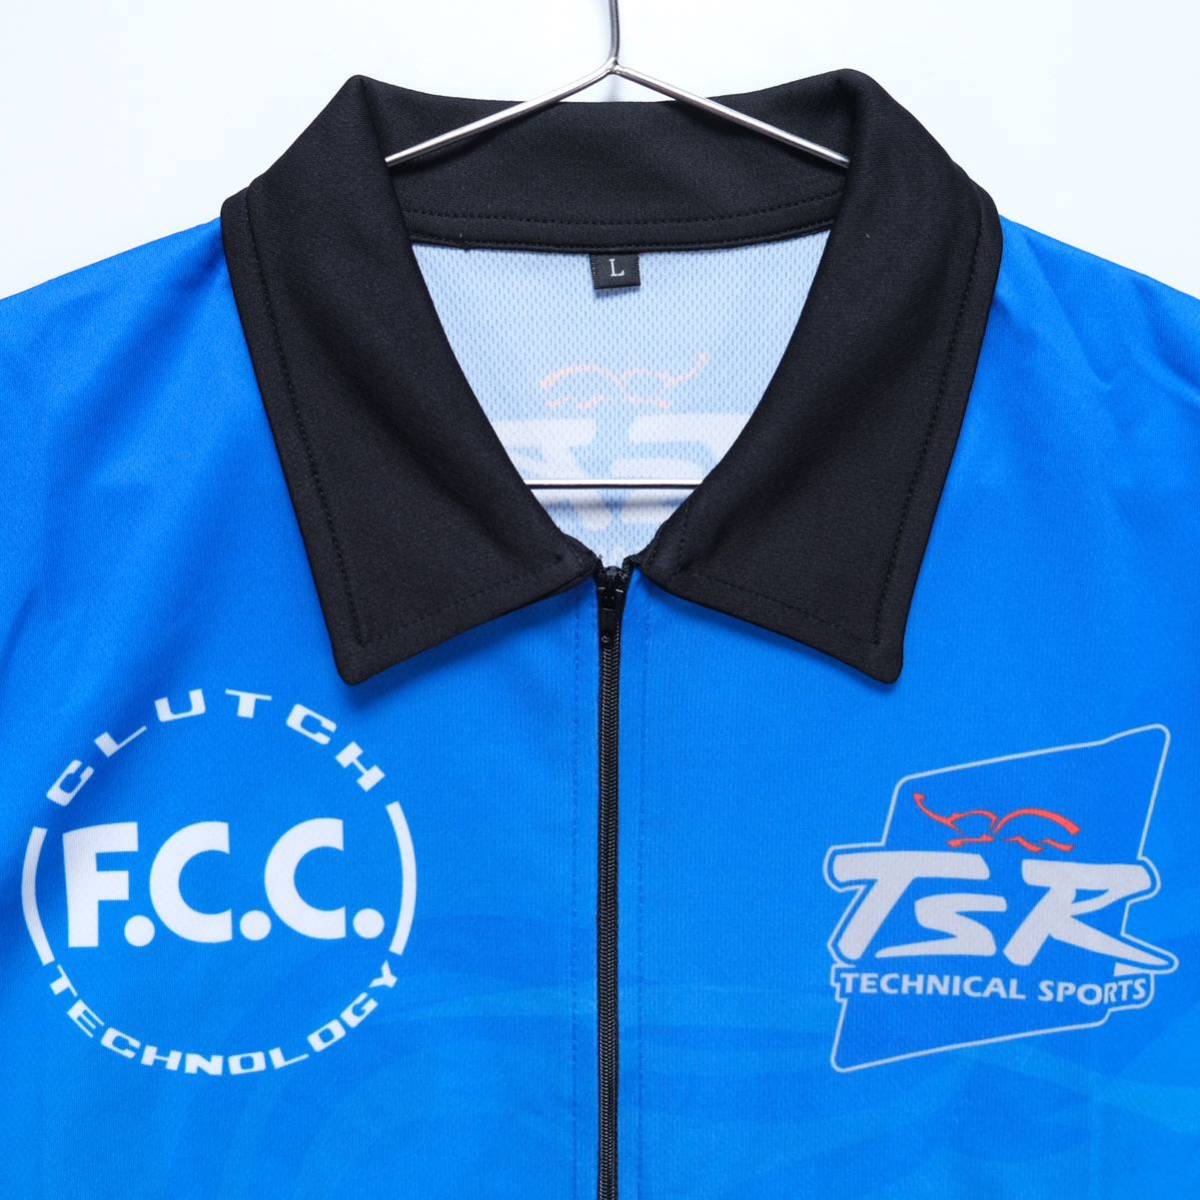 [ бесплатная доставка ]F.C.C. TSR Honda/ Suzuka 8 час выносливость load гонки / рубашка "pit shirt" /TECHNICAL SPORTS RACING/ голубой /L размер 